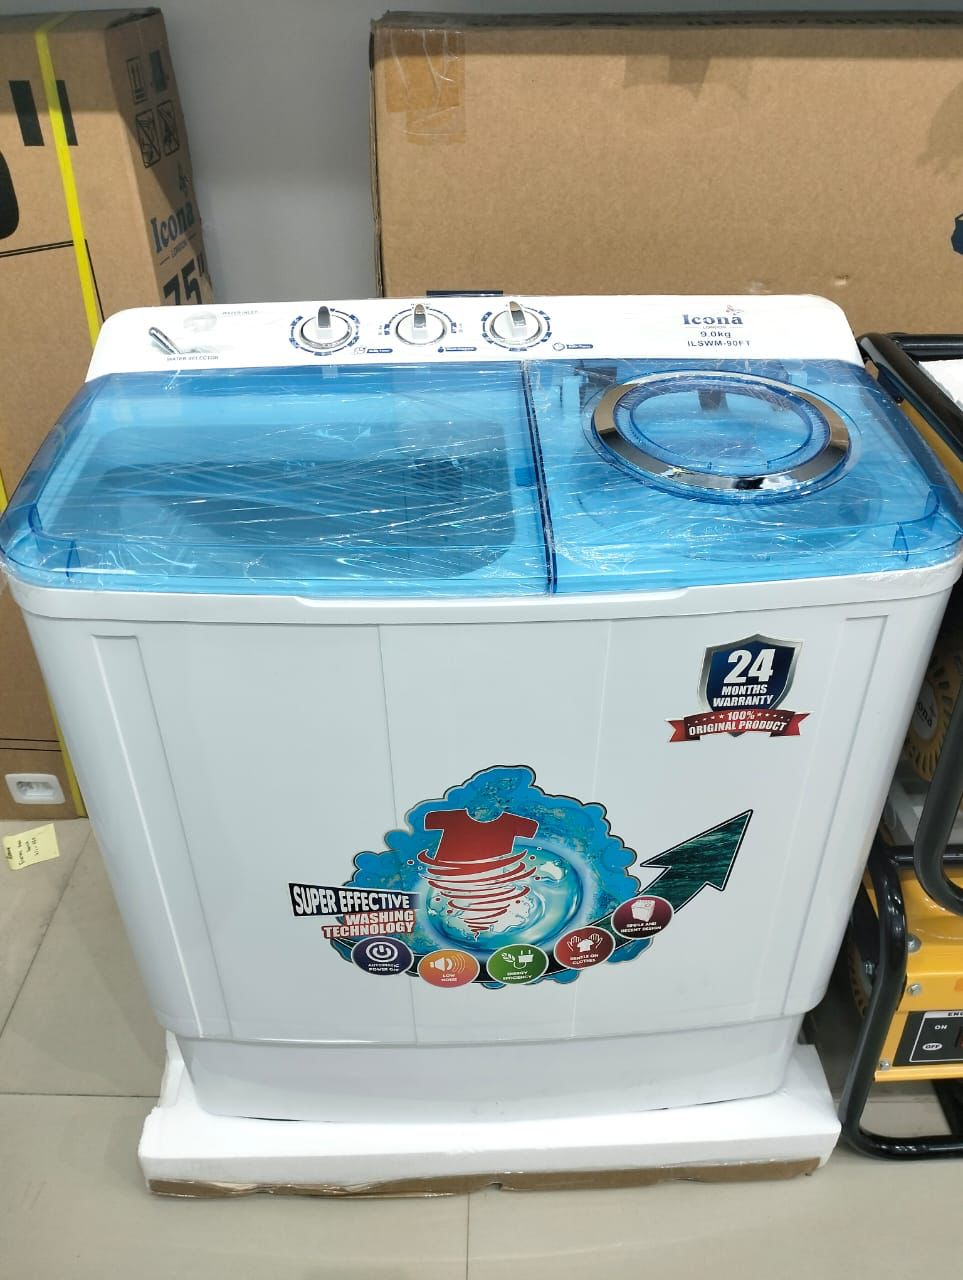 Icona washing machine 9kg